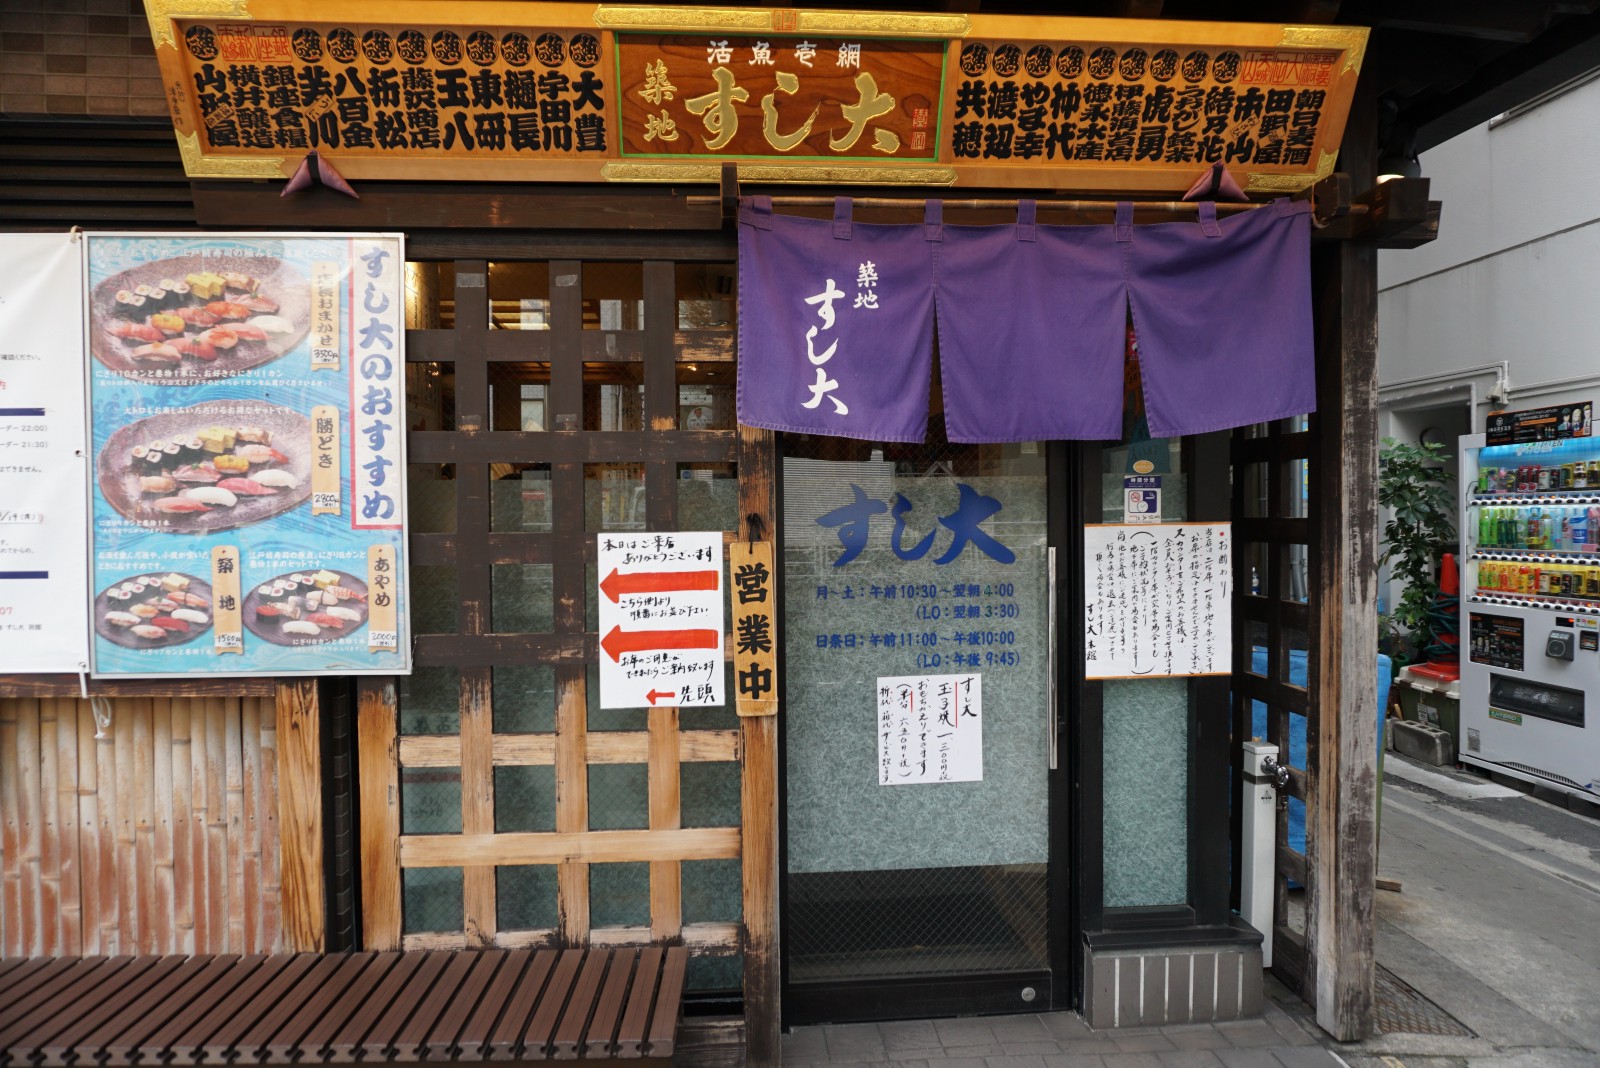 The shop front of Sushi Dai in Tsukiji